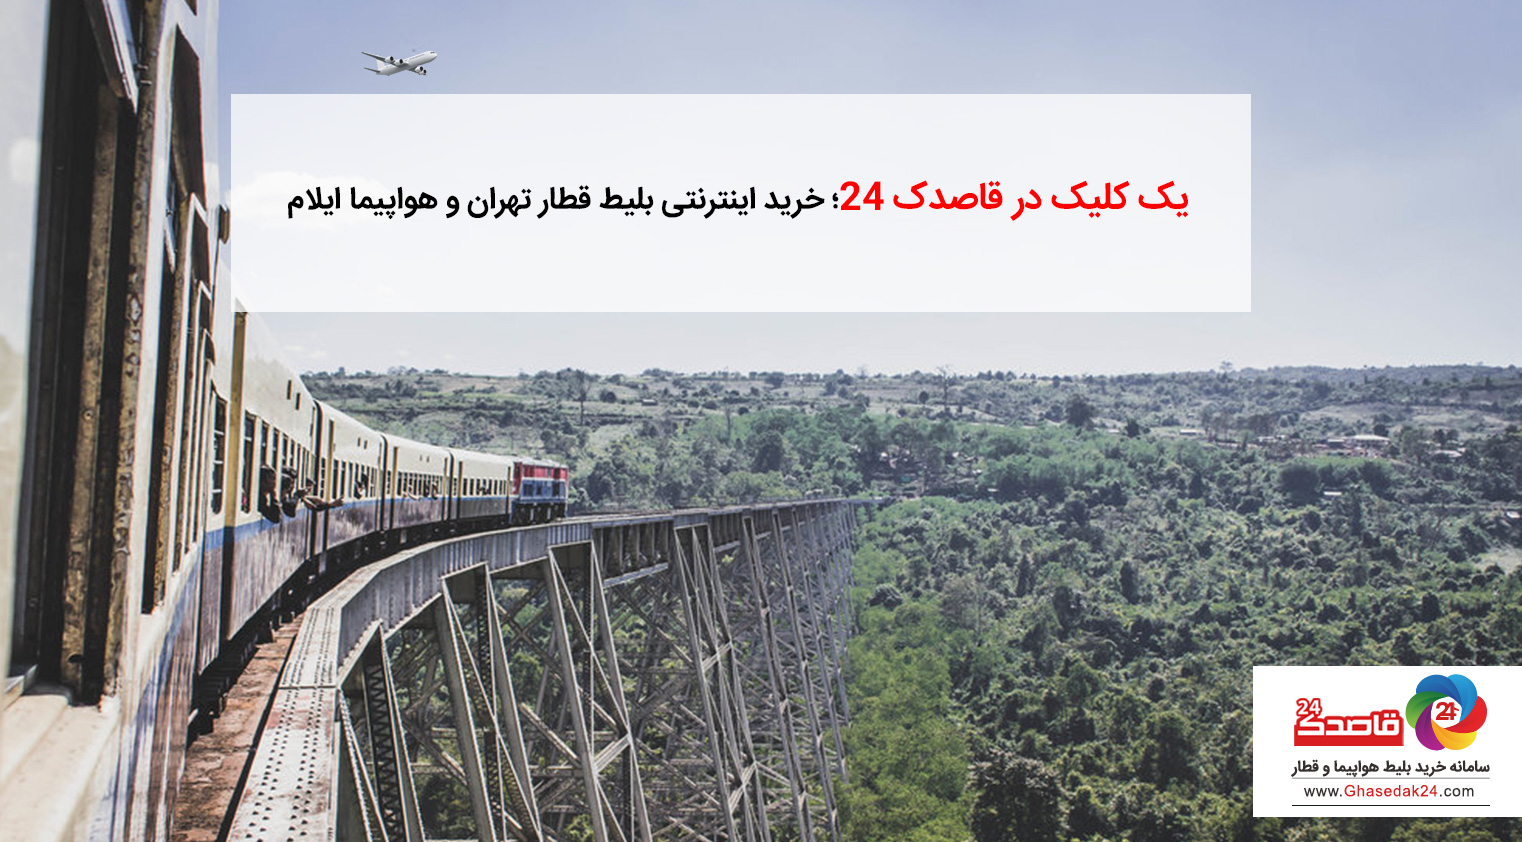 یک کلیک در قاصدک ۲۴؛ خرید اینترنتی بلیط قطار تهران و خرید بلیط هواپیما ایلام